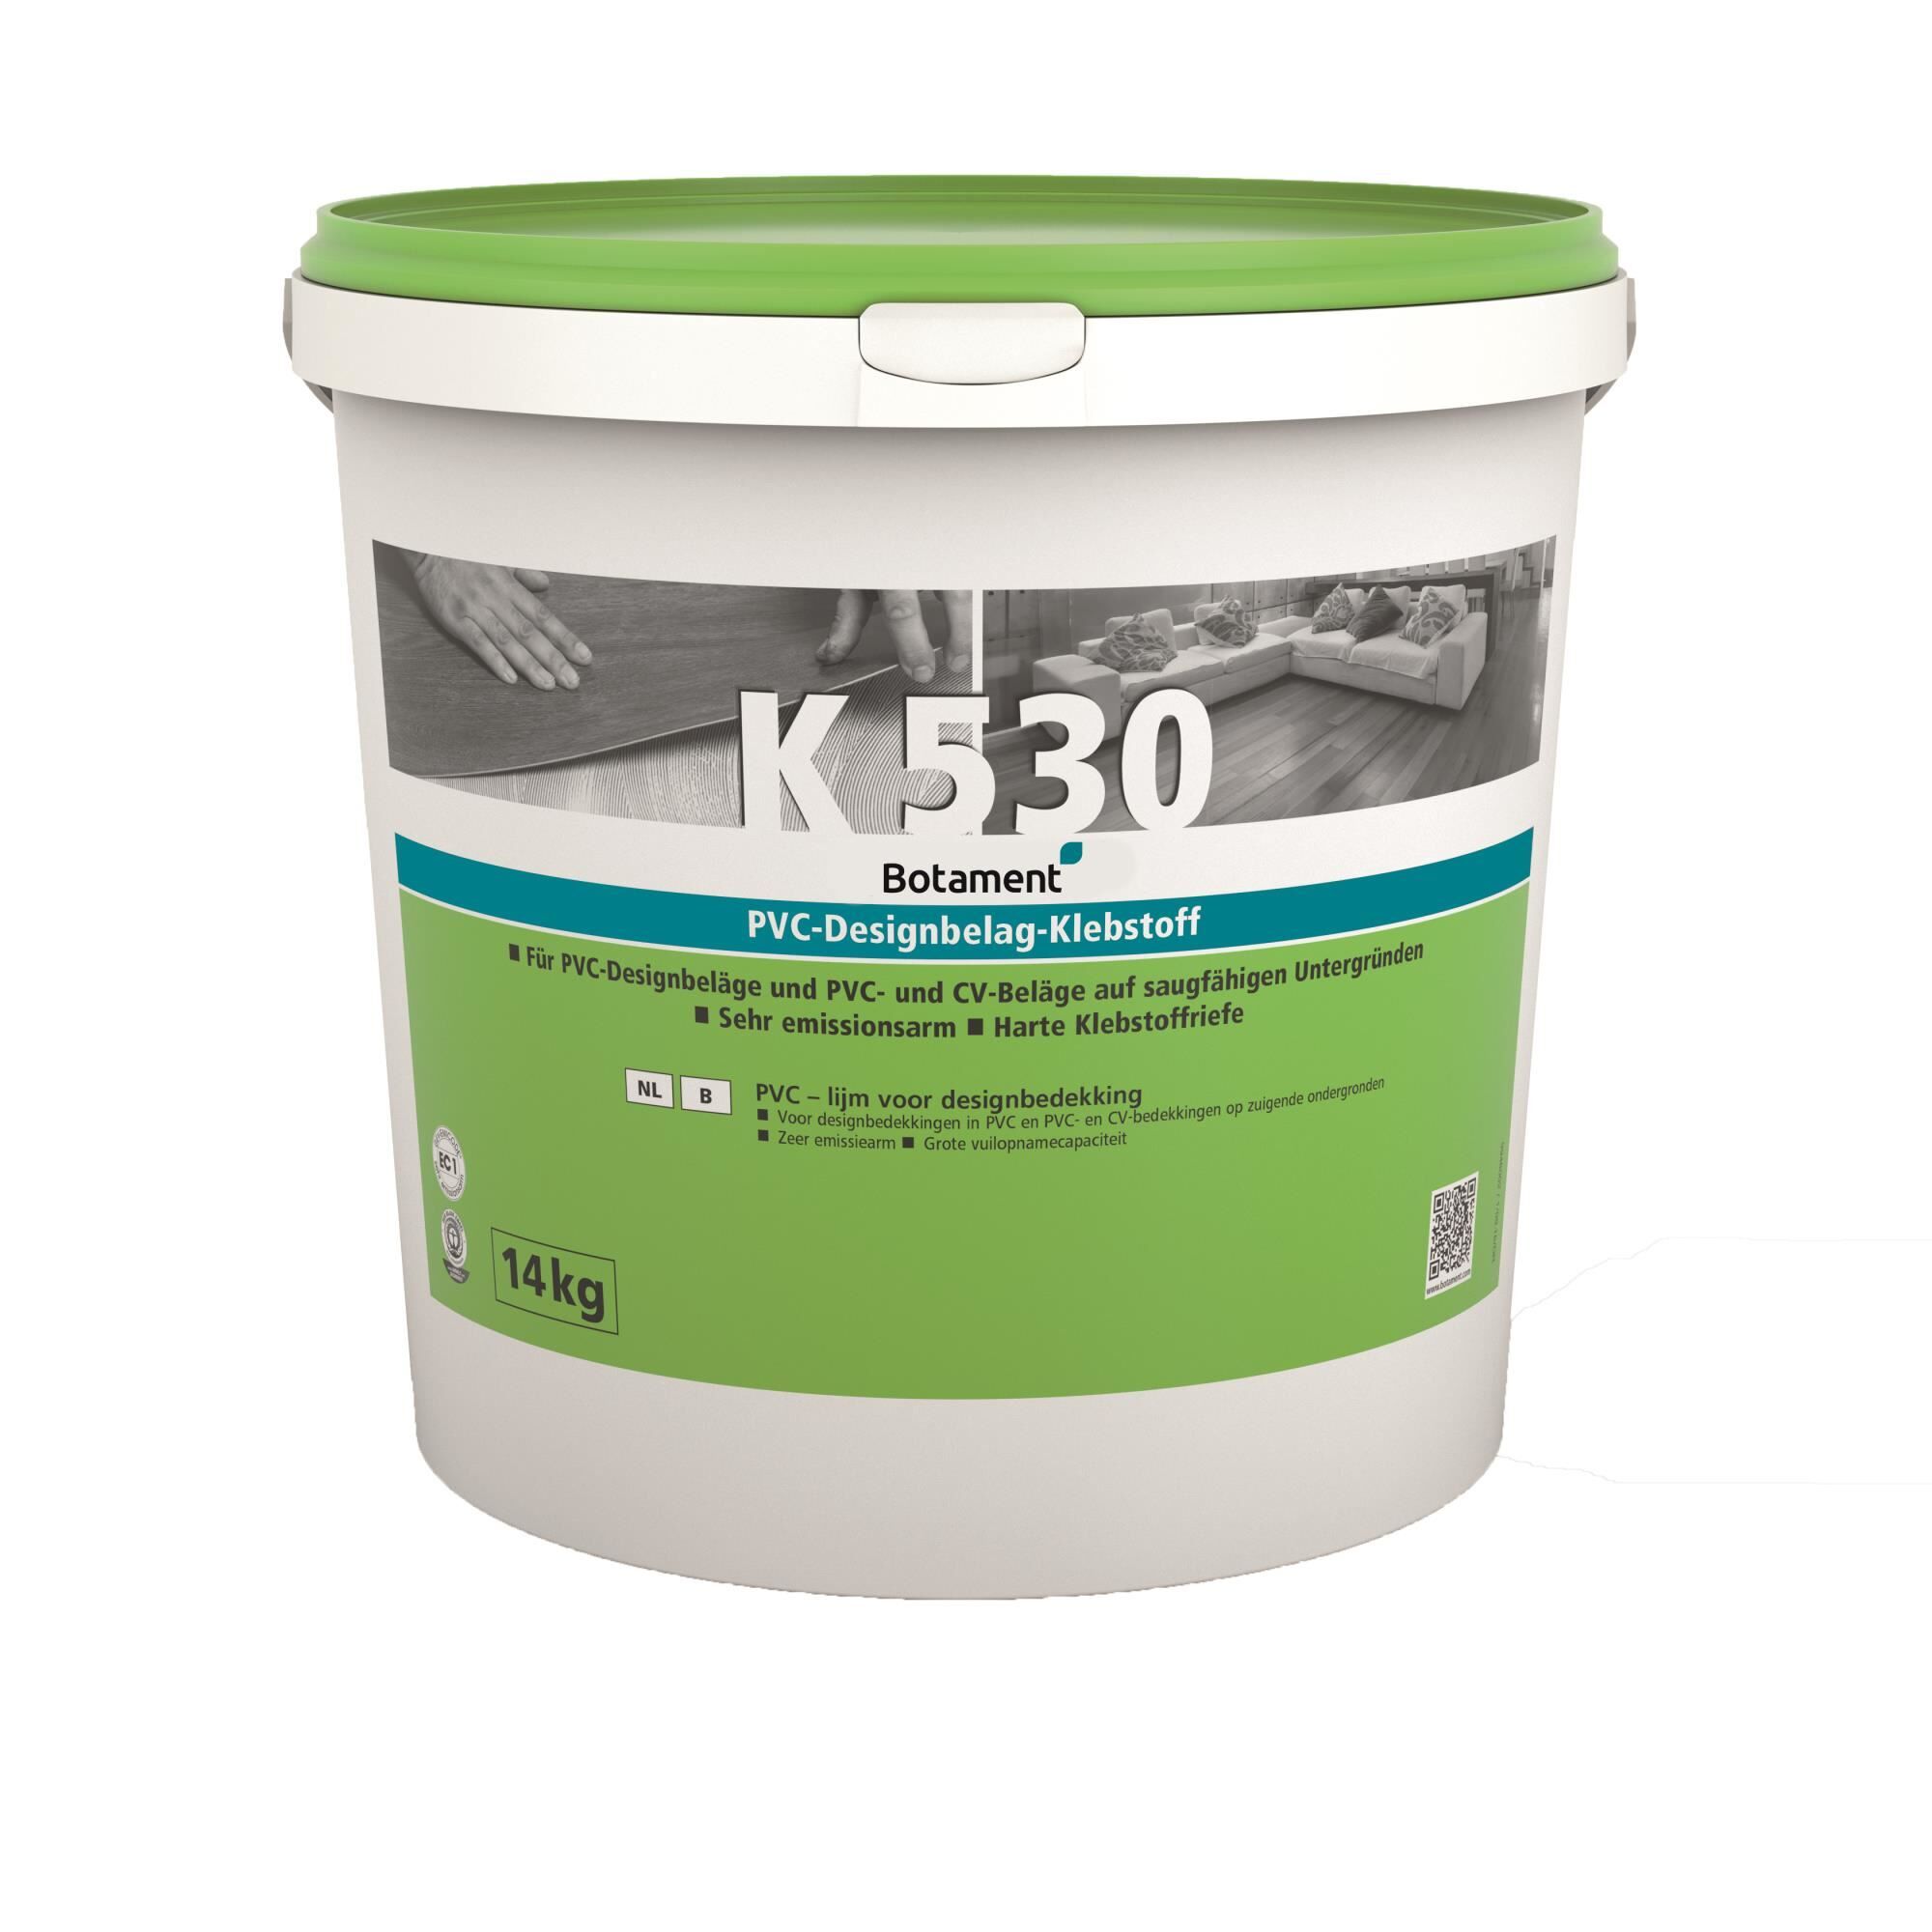 K 530 PVC Designbelag Klebstoff - 14 KG